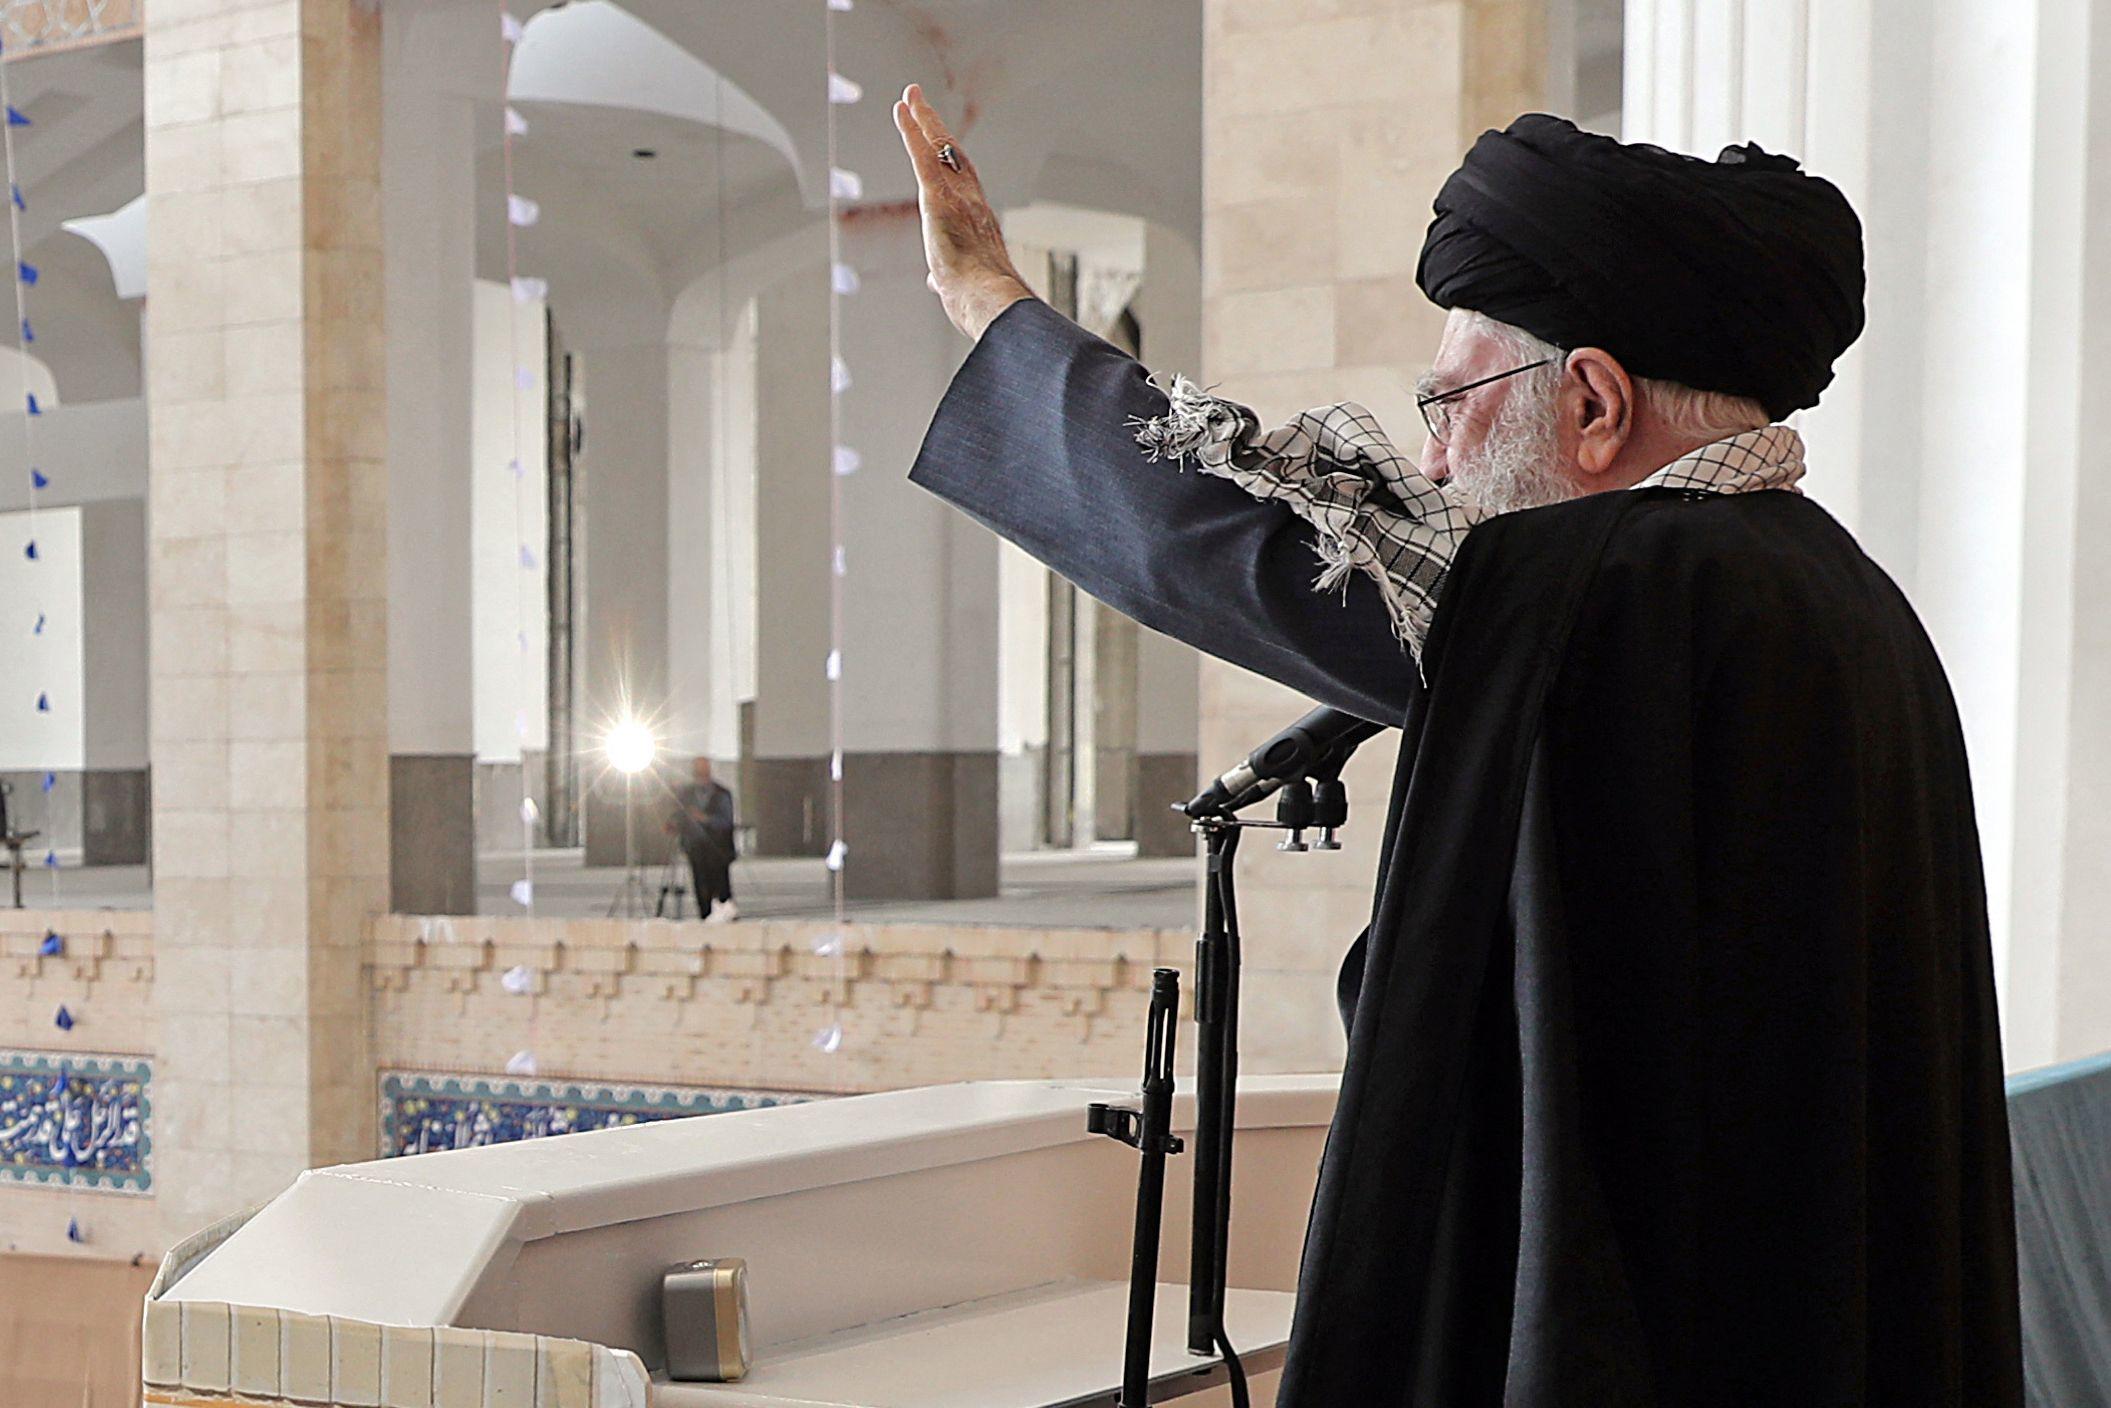 L’ayatollah Khamenei, le guide suprême iranien dans un discours retransmis à l’occasion de l’Aïd el-Fitr, la fête marquant la fin du mois de jeûne musulman du ramadan a réitéré ses menaces contre Israël. AFP